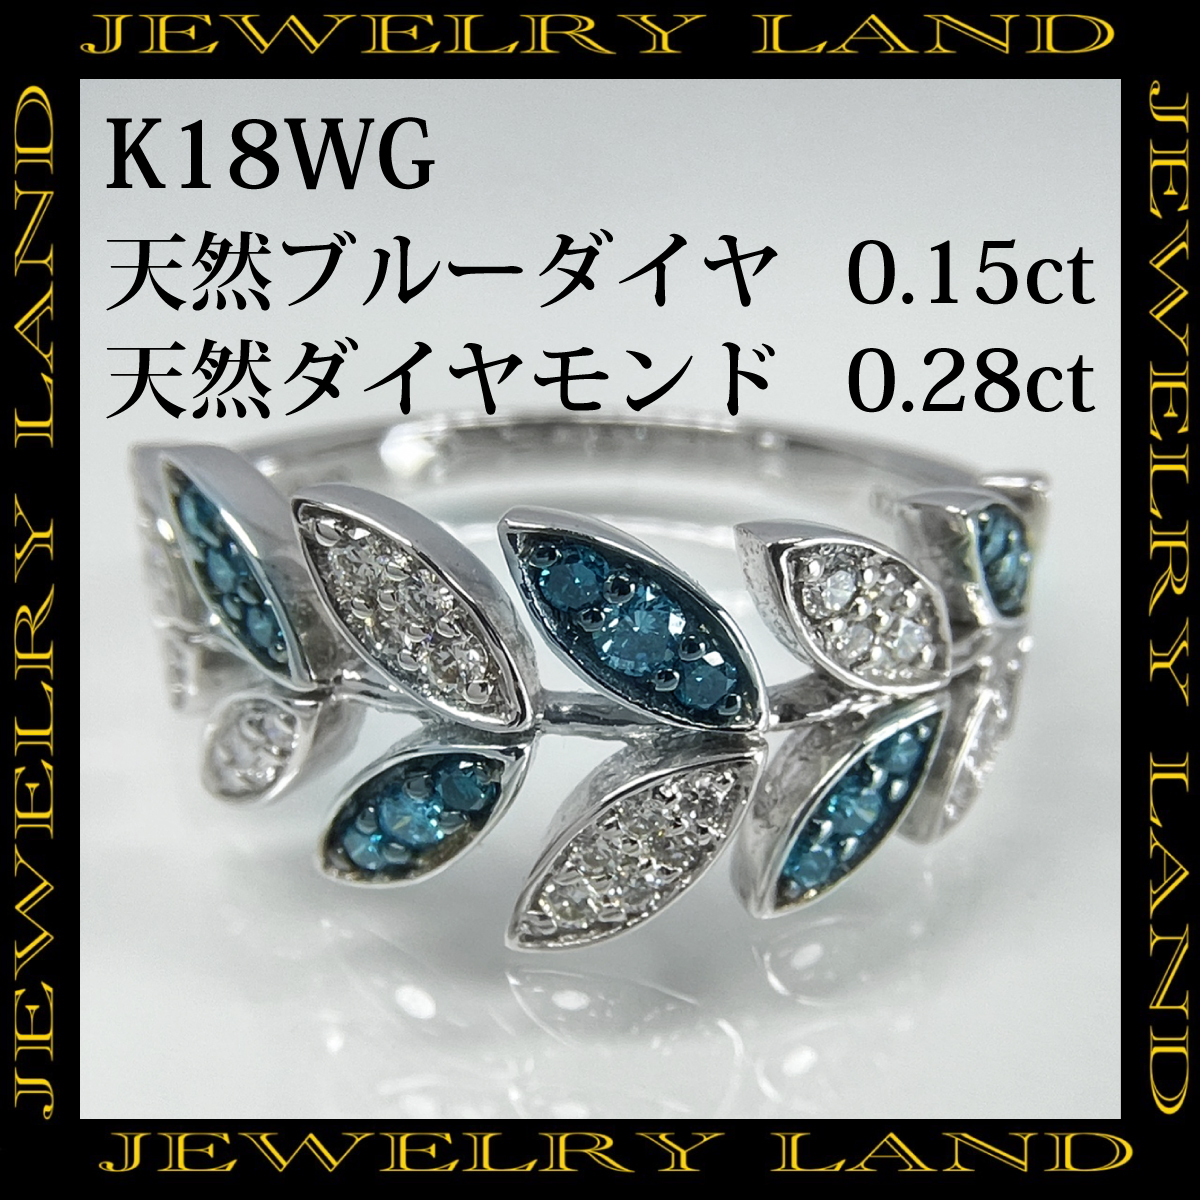 K18wg 天然ダイヤ 0.28ct ブルーダイヤ 0.15ct リング